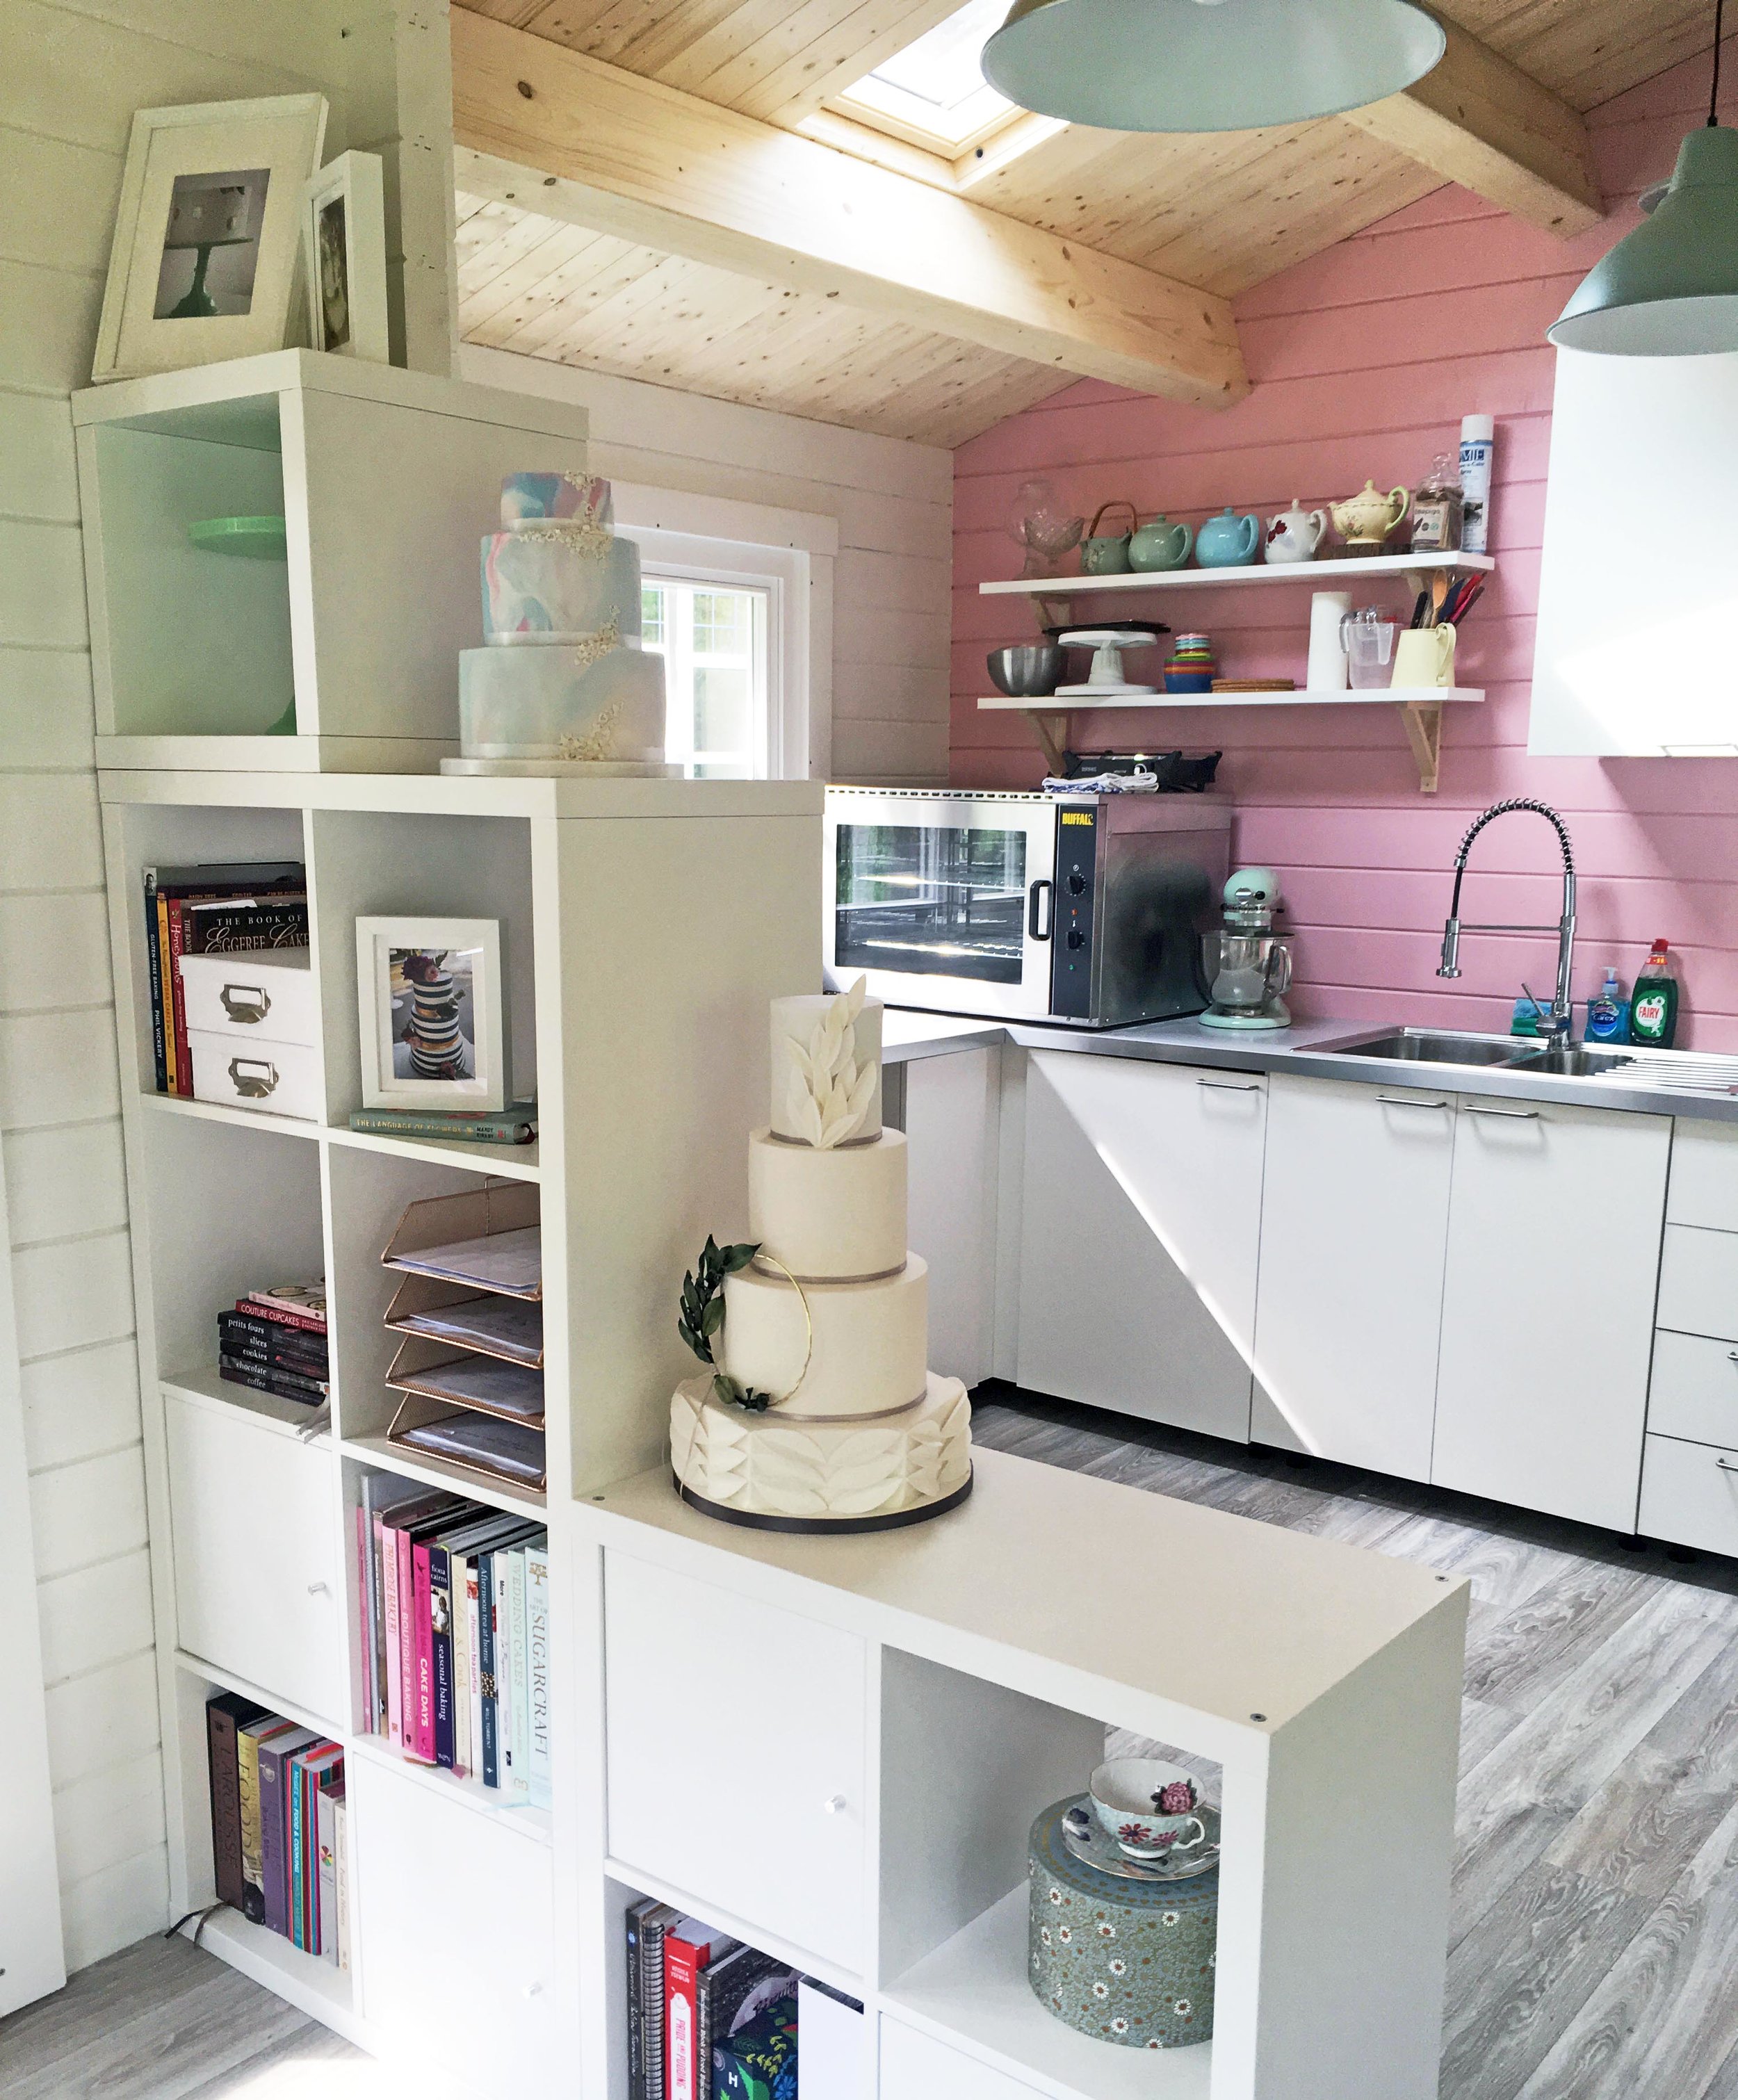 Cake studio kitchen